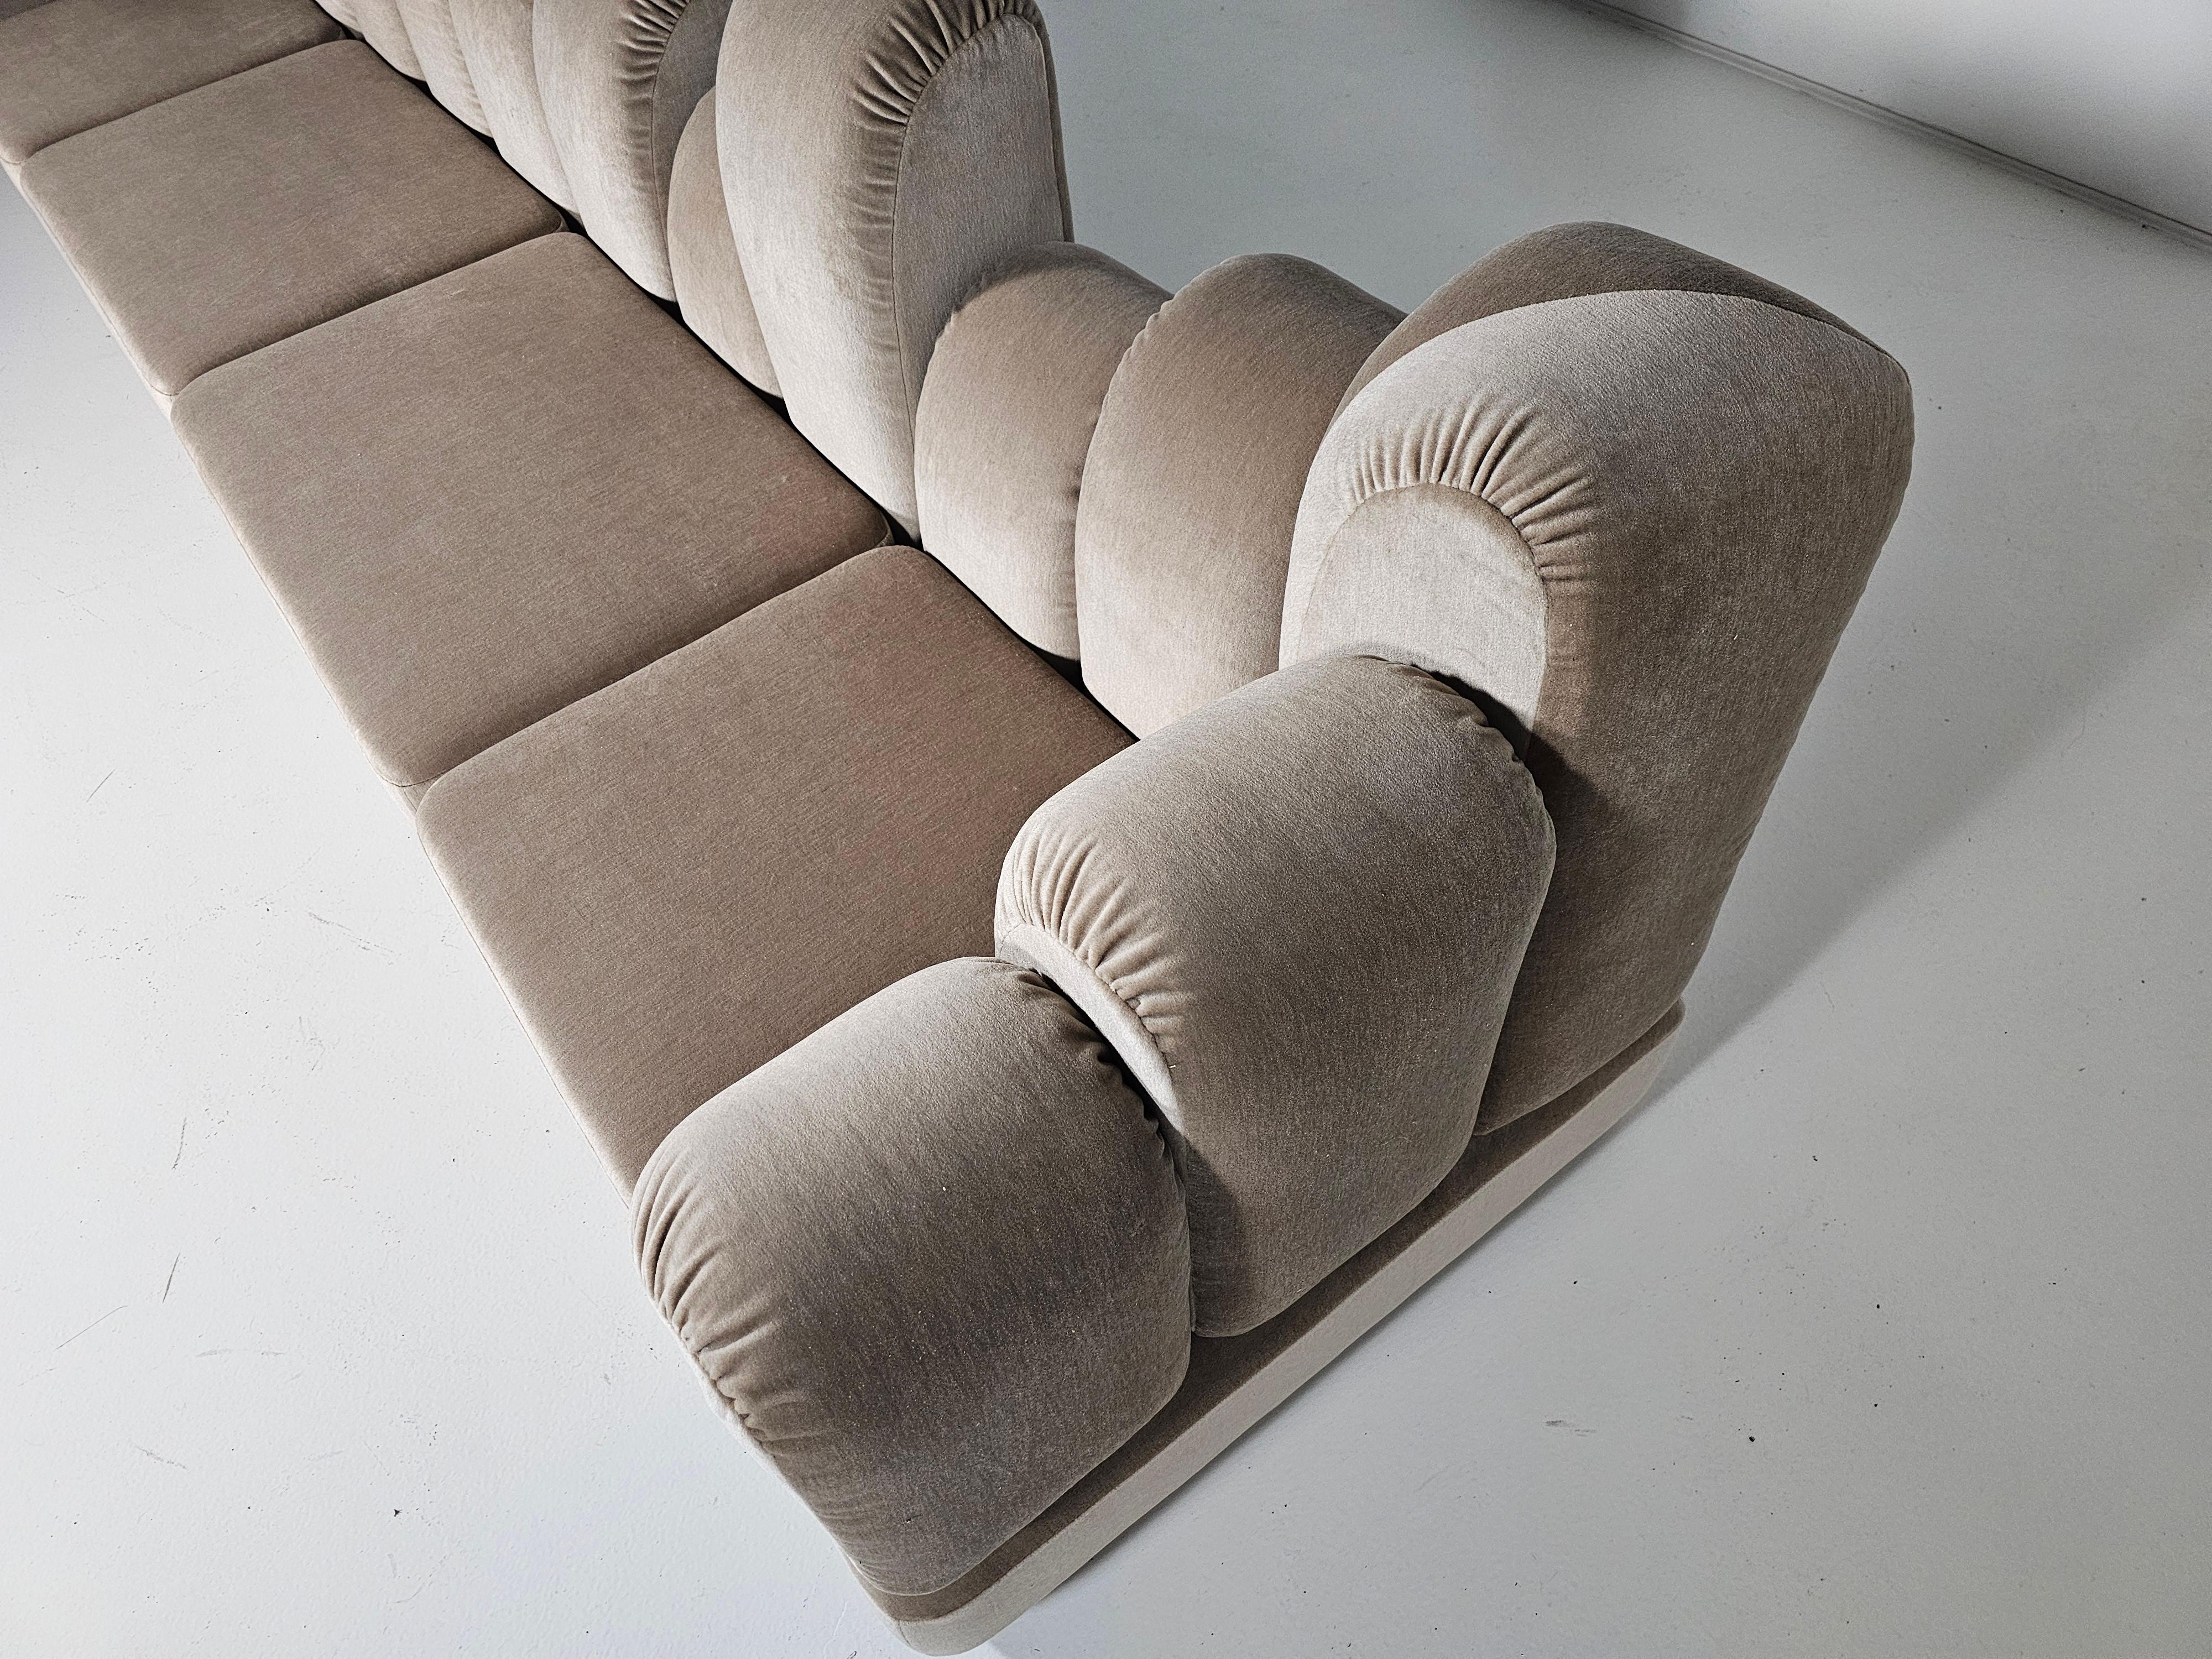 Hans Hopfer 'Dromadaire' Sectional Sofa in beige mohair velvet, Roche Bobois For Sale 4